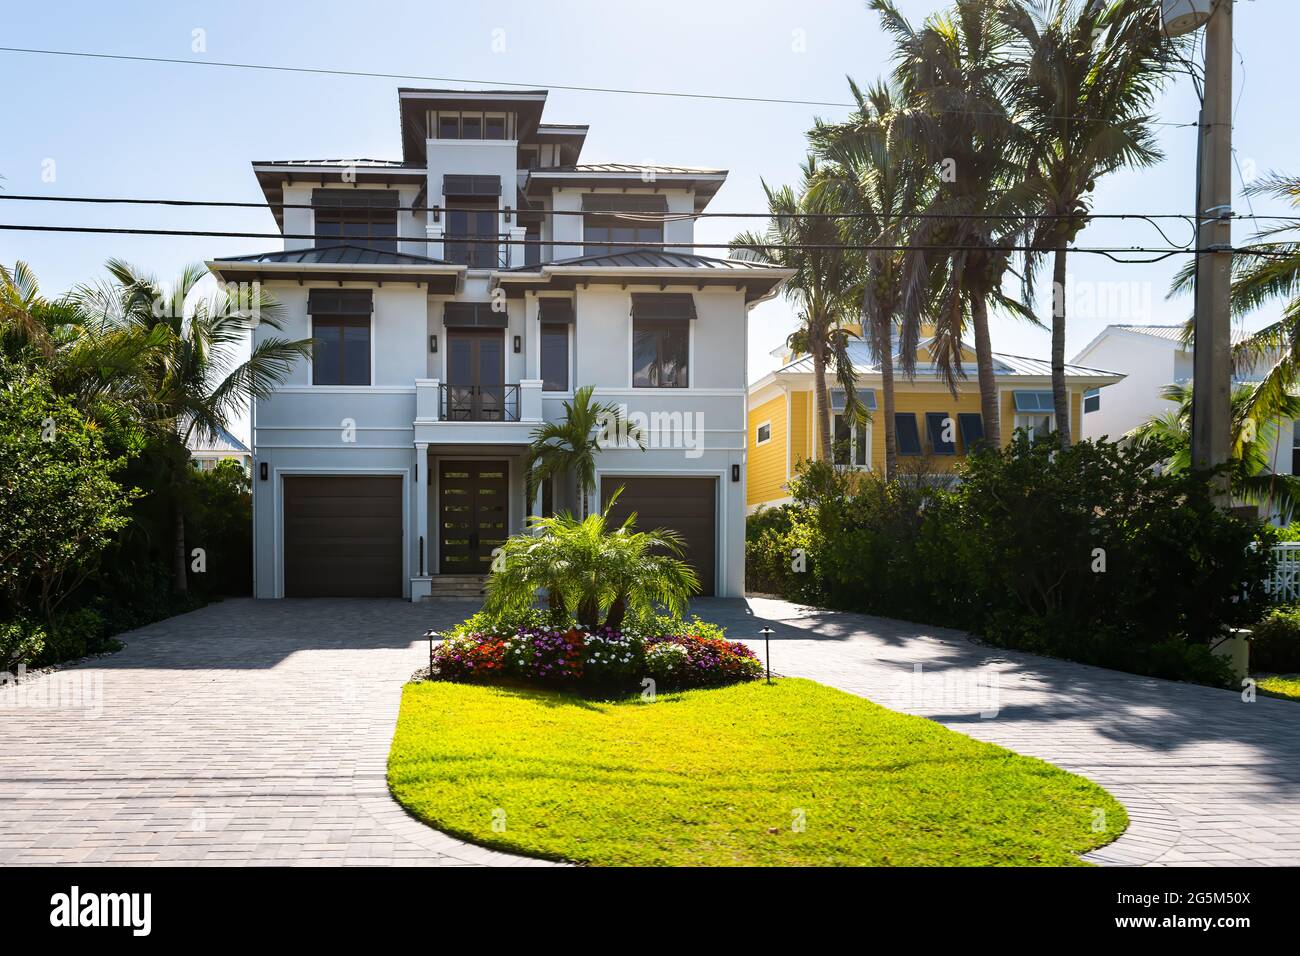 Bonita Springs, Florida Golf von mexiko Küste mit Luxusvilla Herrenhaus Gebäude am Wasser Architektur bunt bemalt und Garage Stockfoto